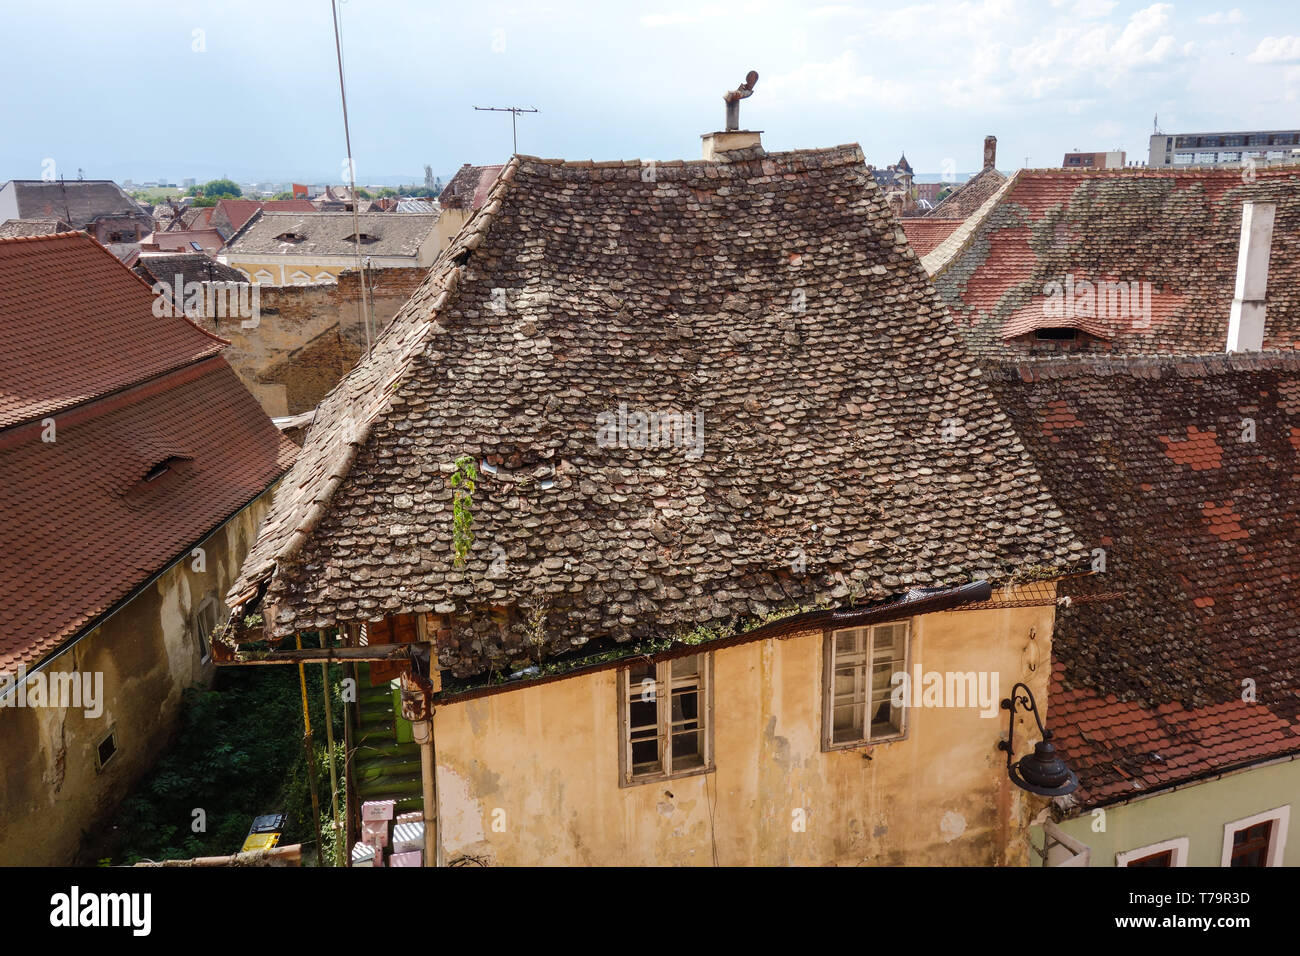 Sur le toit surmonté d'une vieille maison avec une cheminée unique à Sibiu (Hermannstadt), Roumanie Banque D'Images